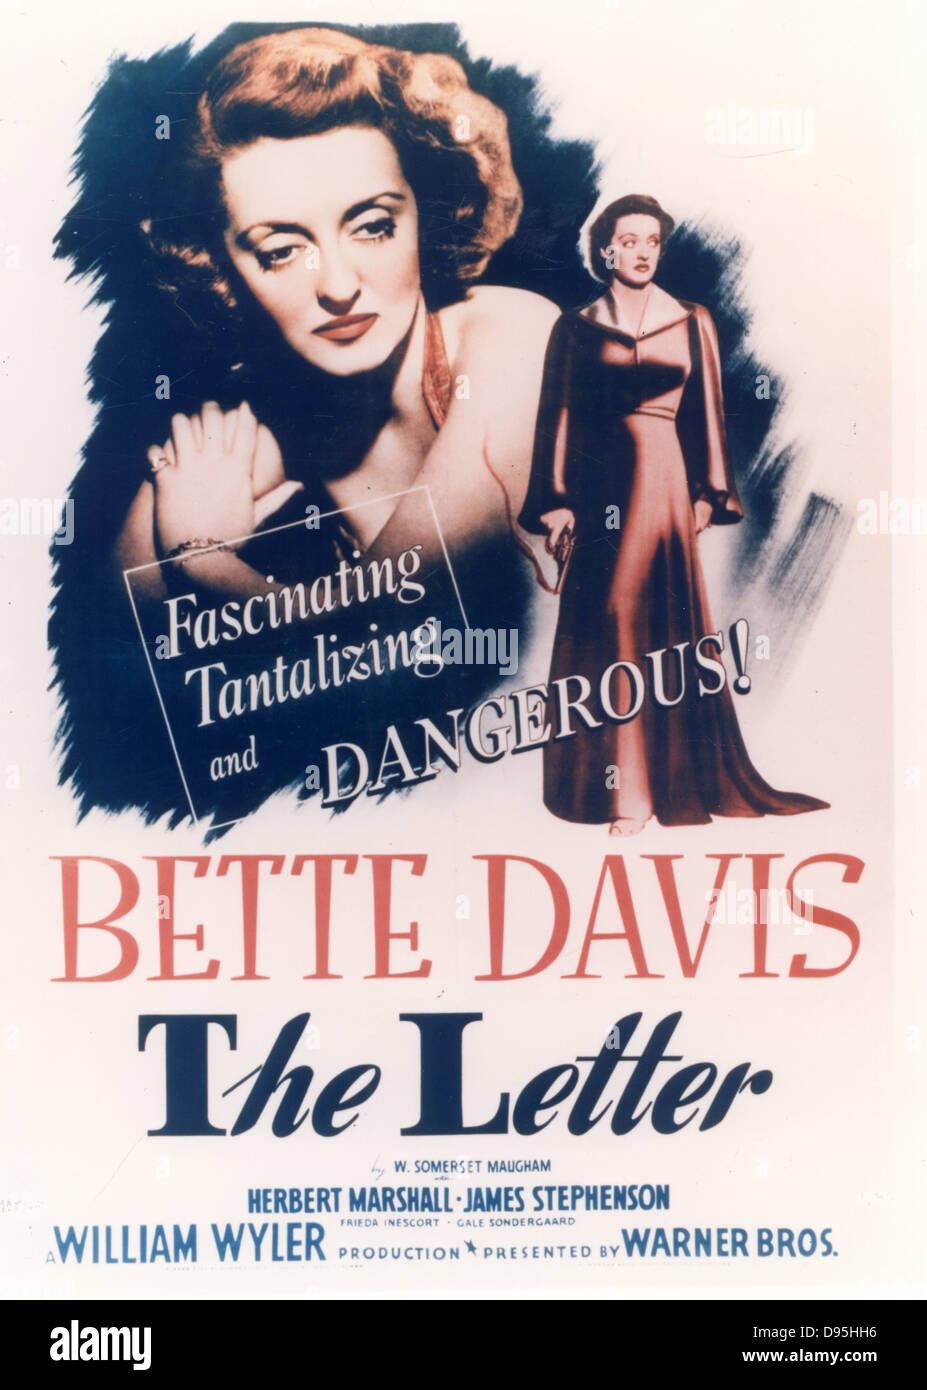 La lettera", Warner Bros, 1940. Produttore: Robert signore. Direttore: William Wyler. Basato sul racconto dello scrittore inglese Somerset Maugham. Poster per il film interpretato da Bette Davis (1908-1989) American attrice di Hollywood e di film di star. Foto Stock